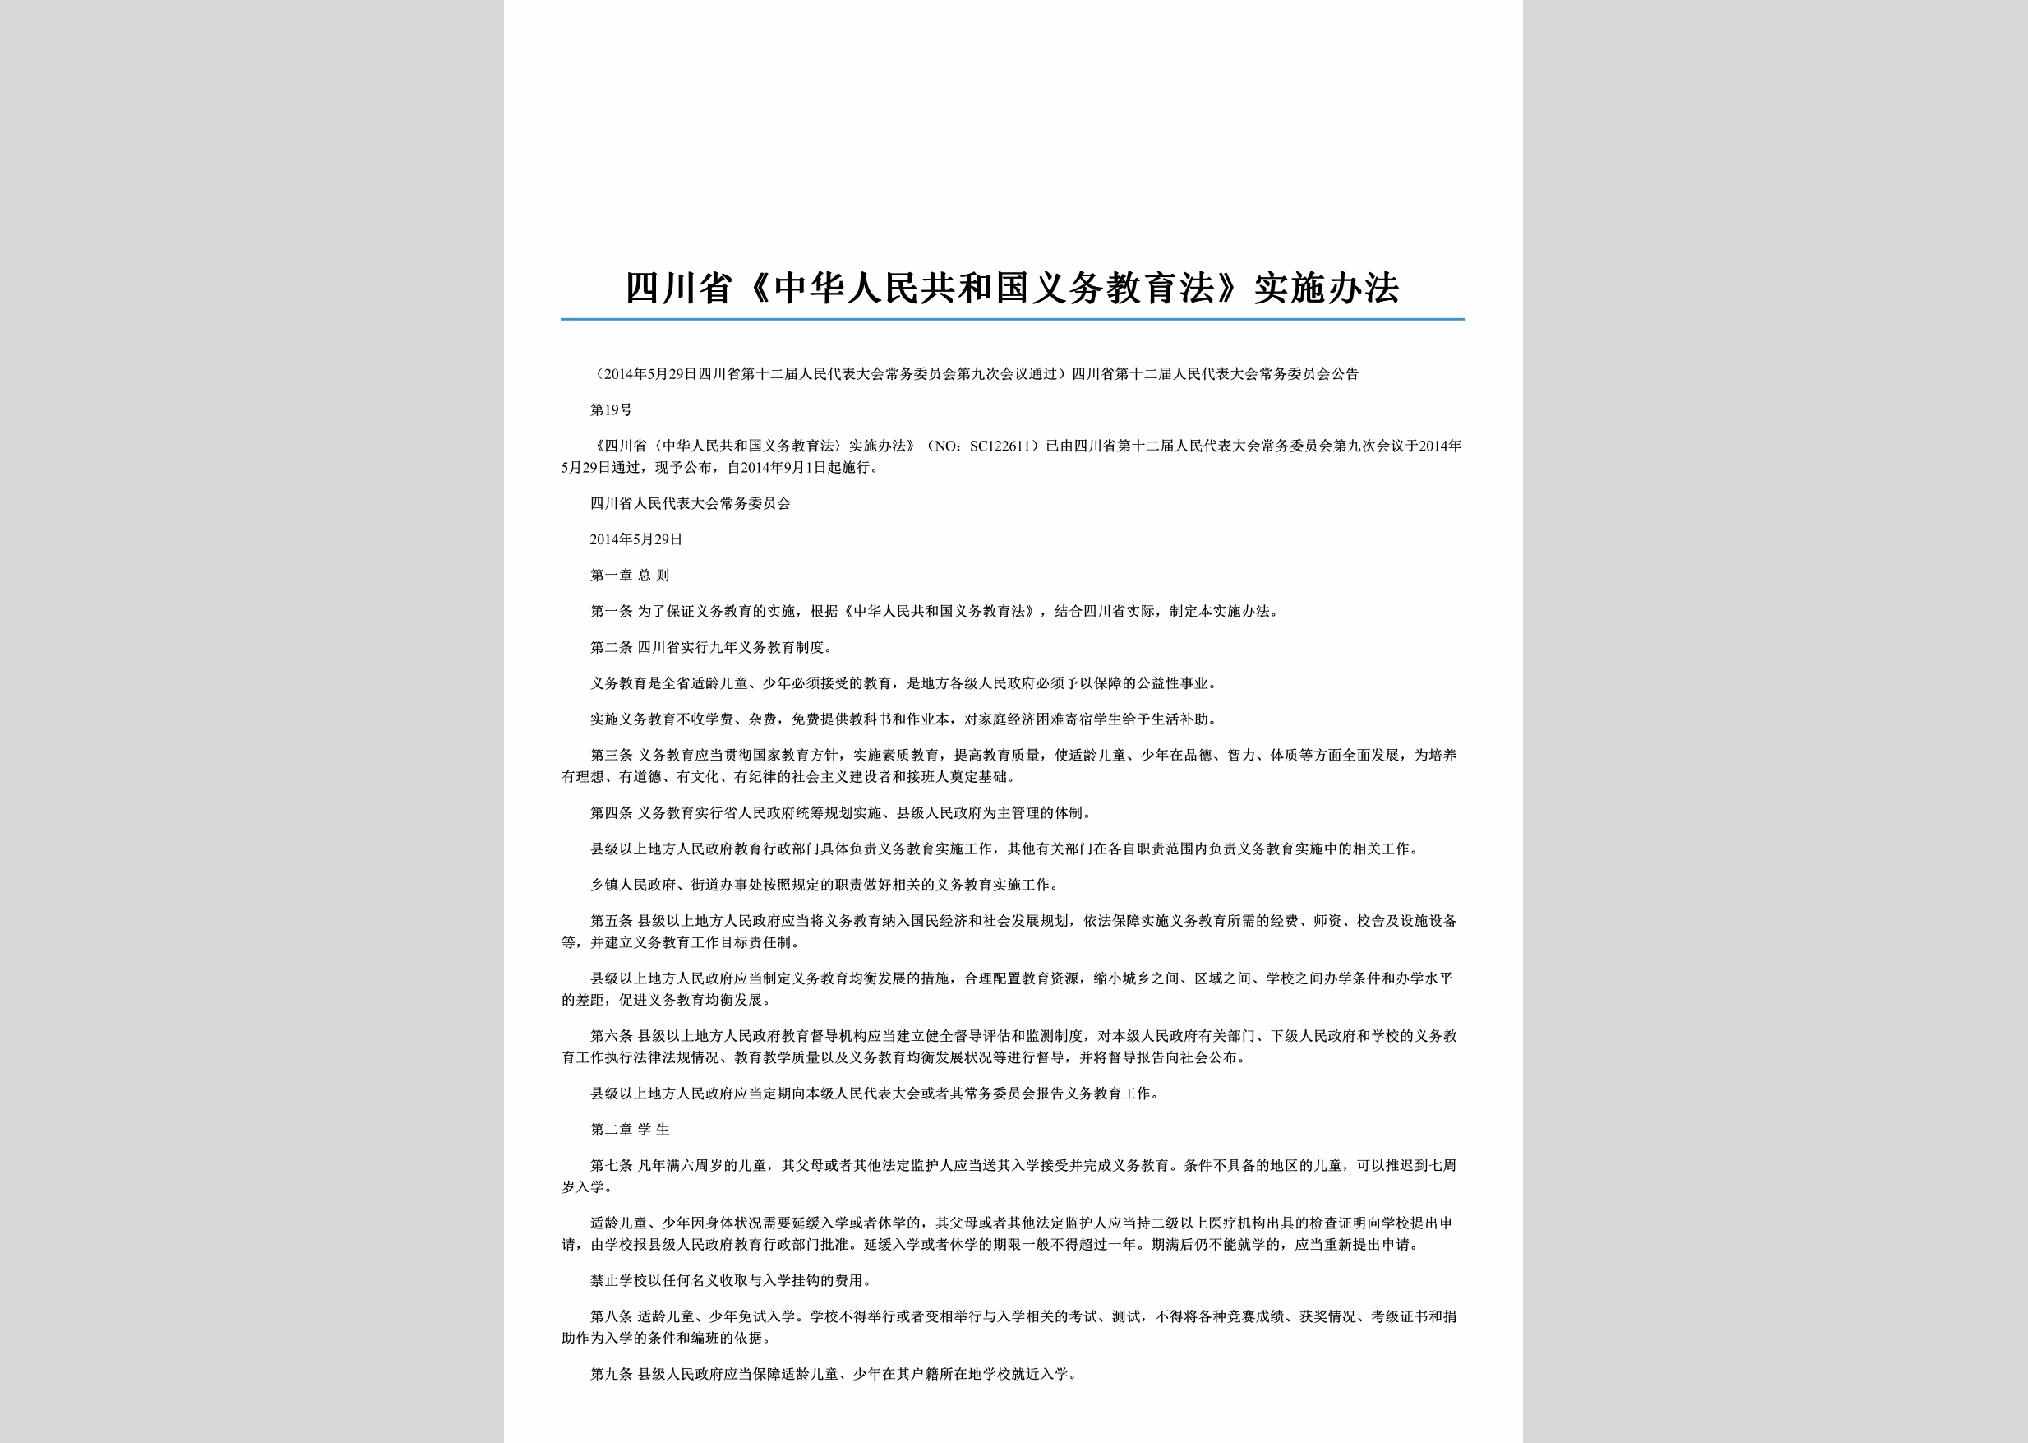 SC-YWJYSSBF-2014：四川省《中华人民共和国义务教育法》实施办法